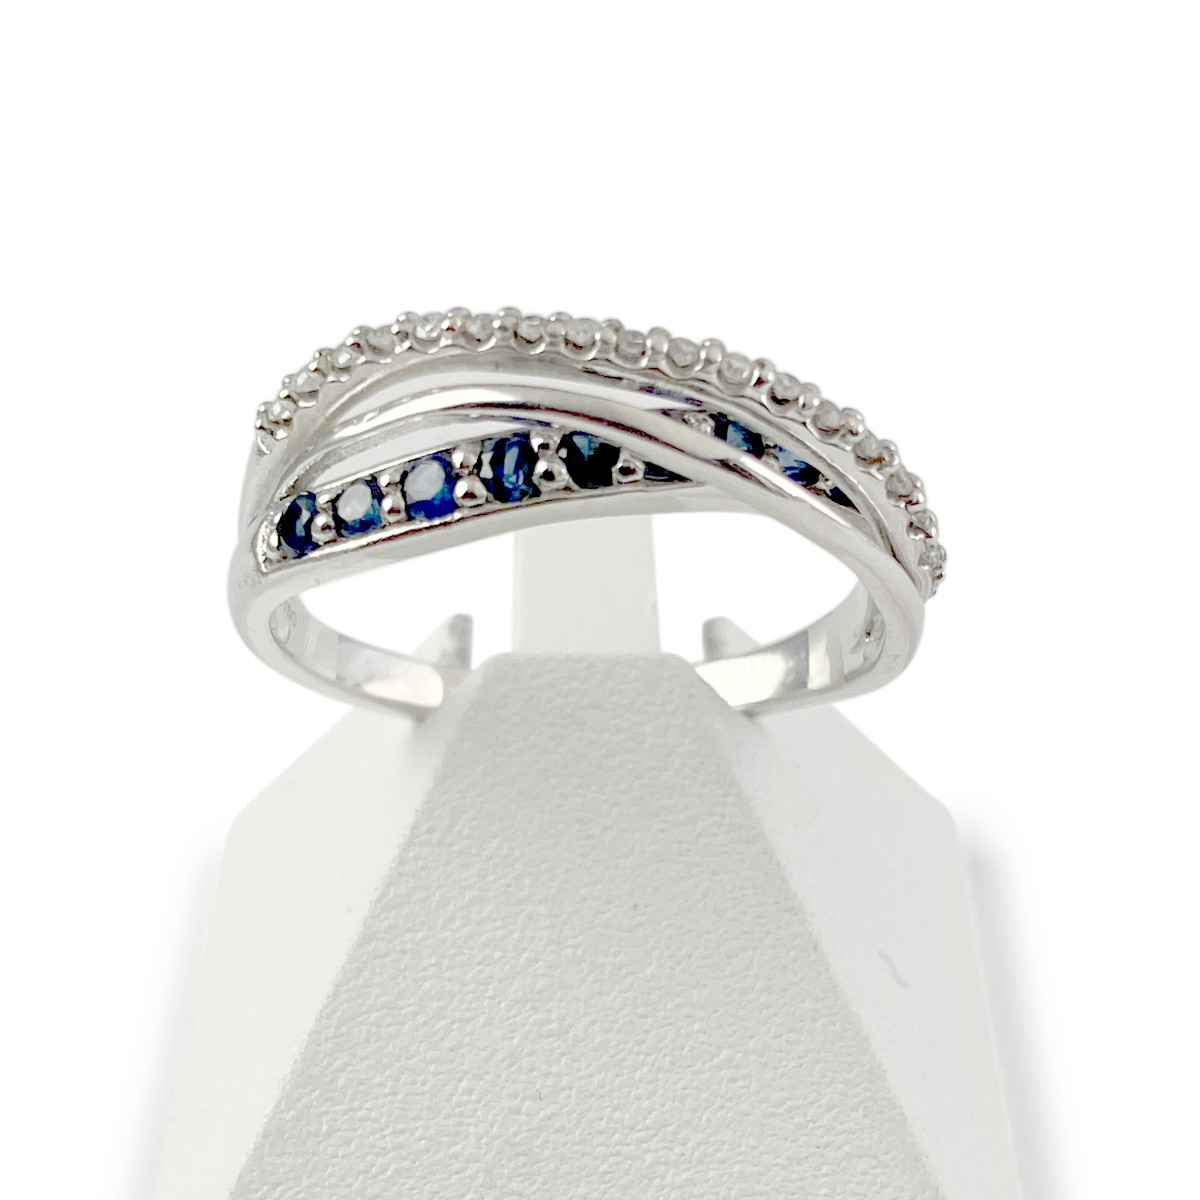 Bague d'occasion or 750 blanc anneaux entrelacés saphirs et diamants